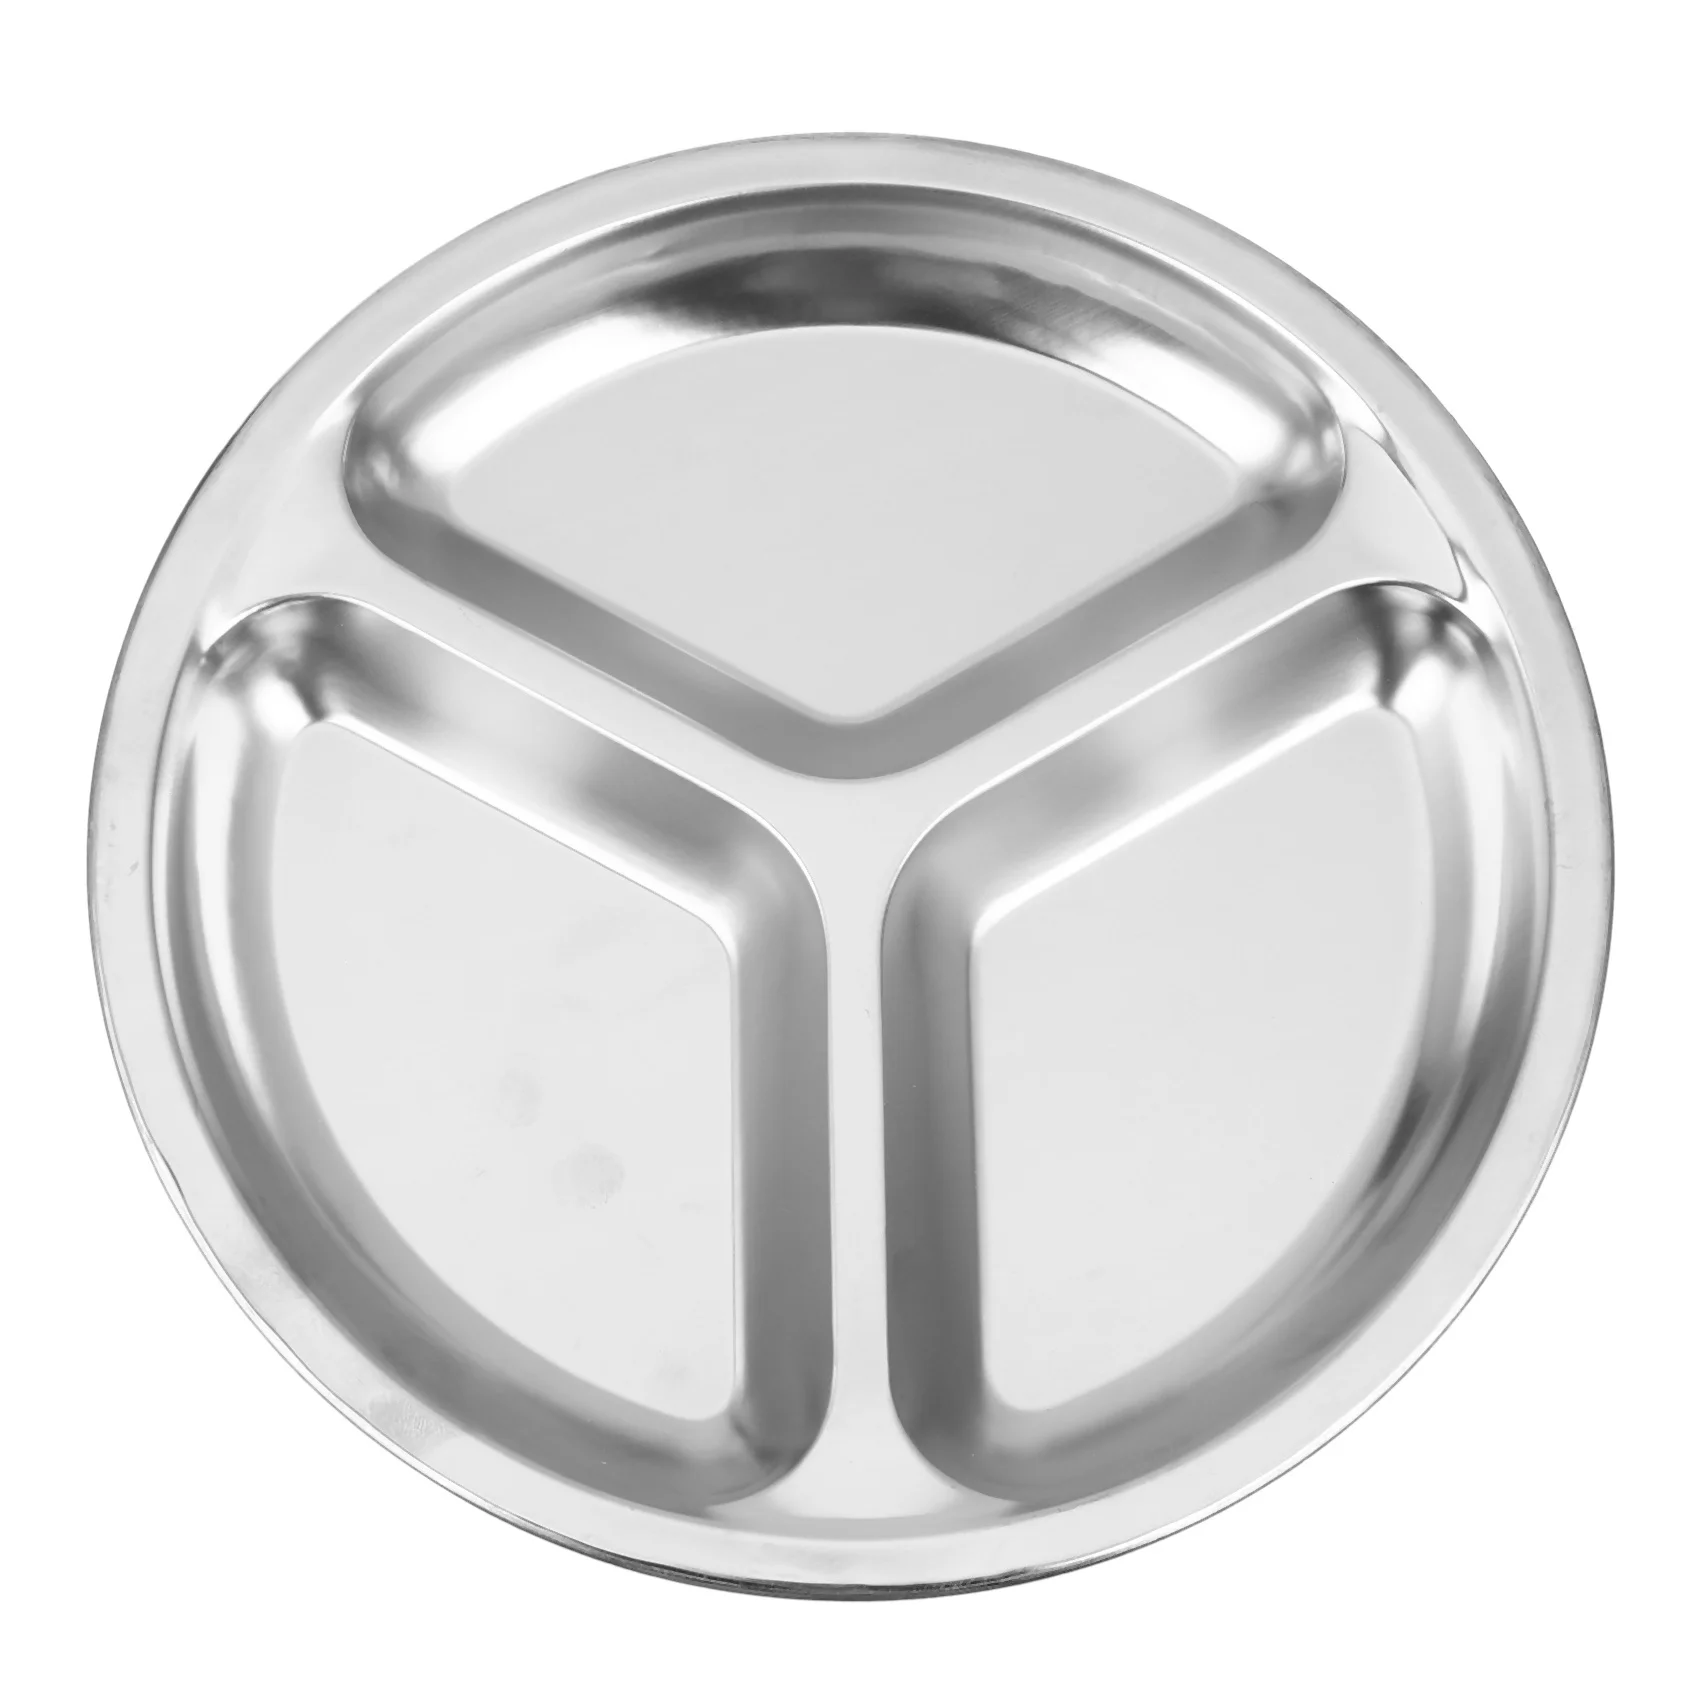 

Круглая обеденная тарелка из нержавеющей стали с 3 секциями, диаметр 24 см